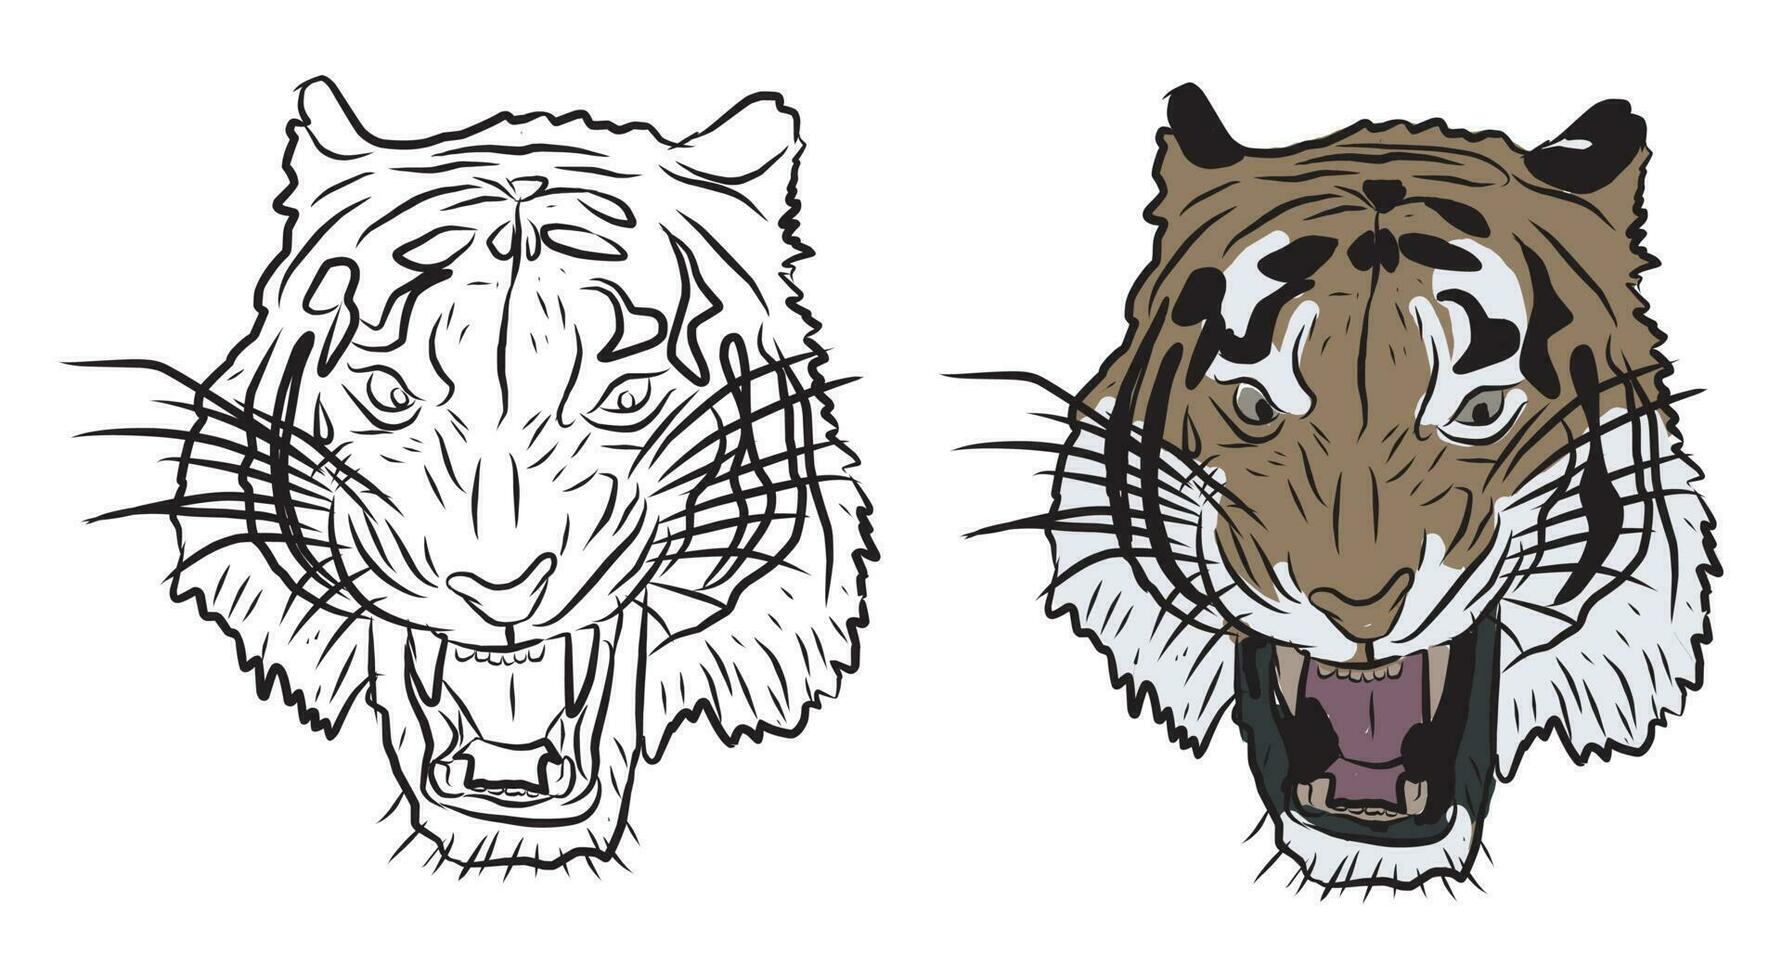 des photos pour éducation coloration tigre têtes, adapté pour dessin livres, coloration applications et plus vecteur